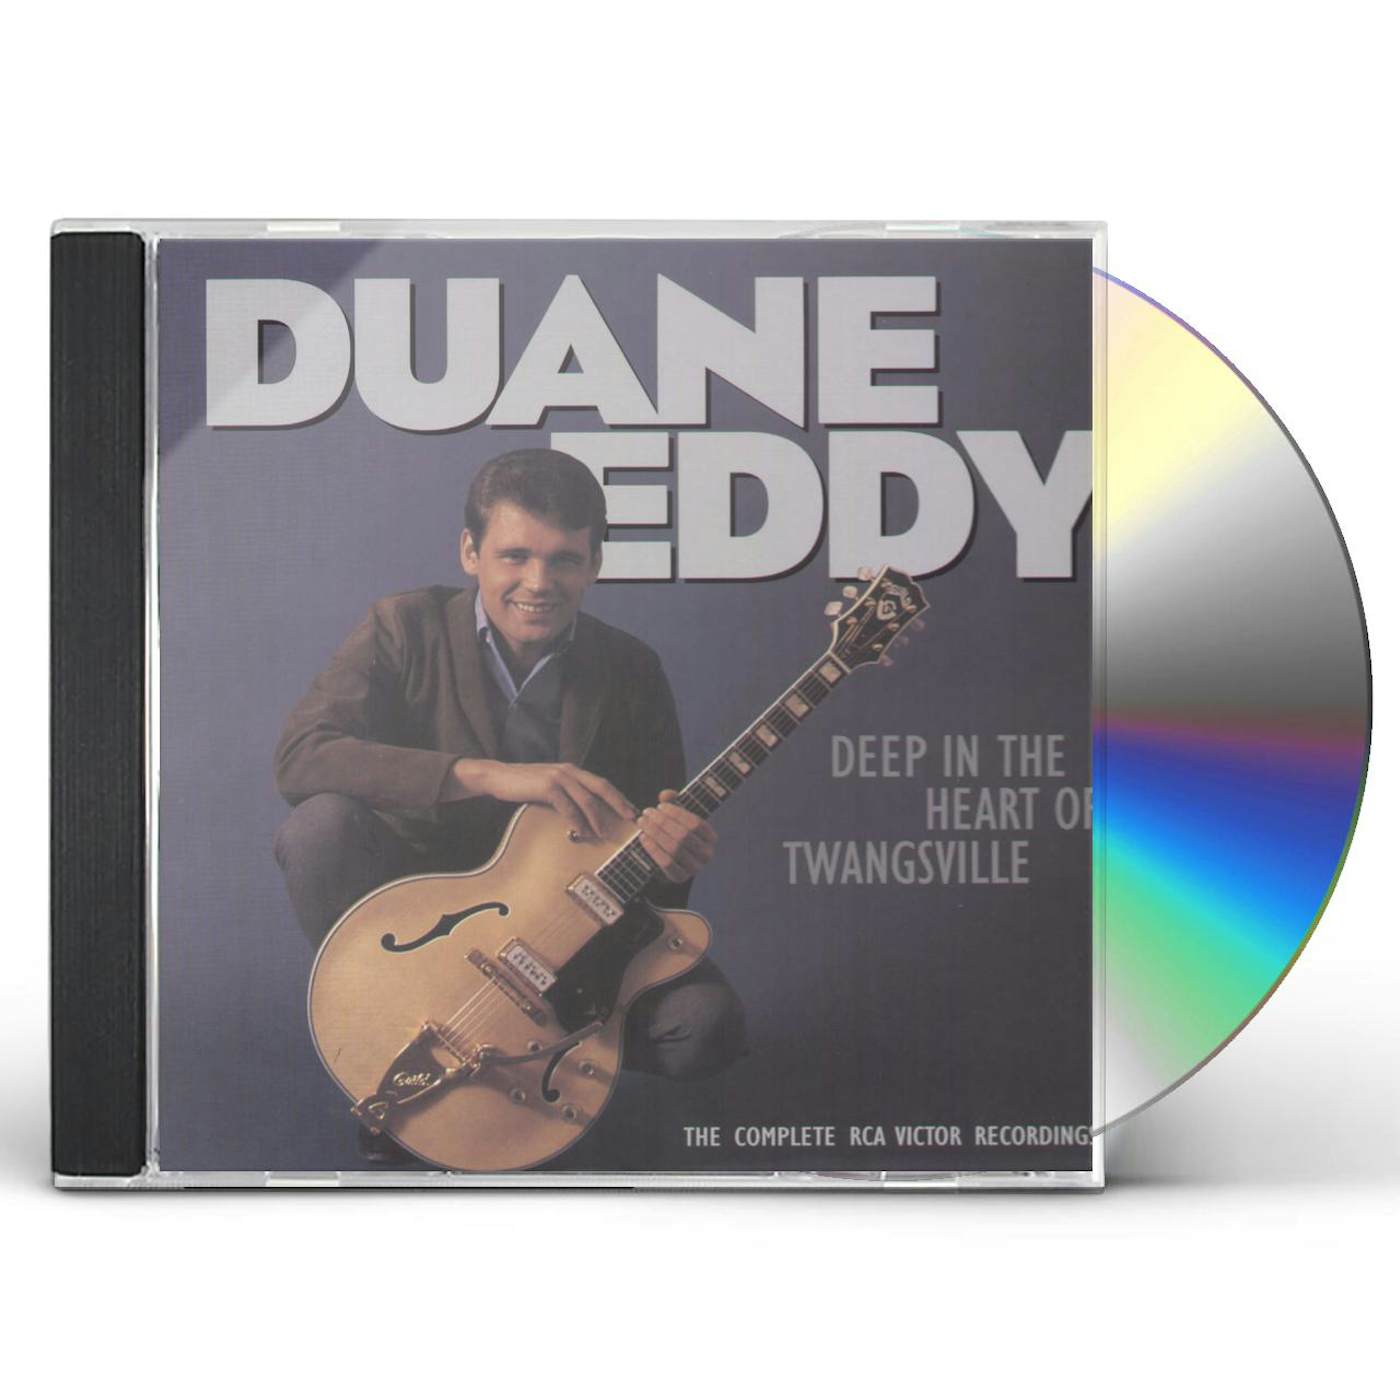 Eddy Duane DEEP IN THE HEART OF TWANGSVILLE CD